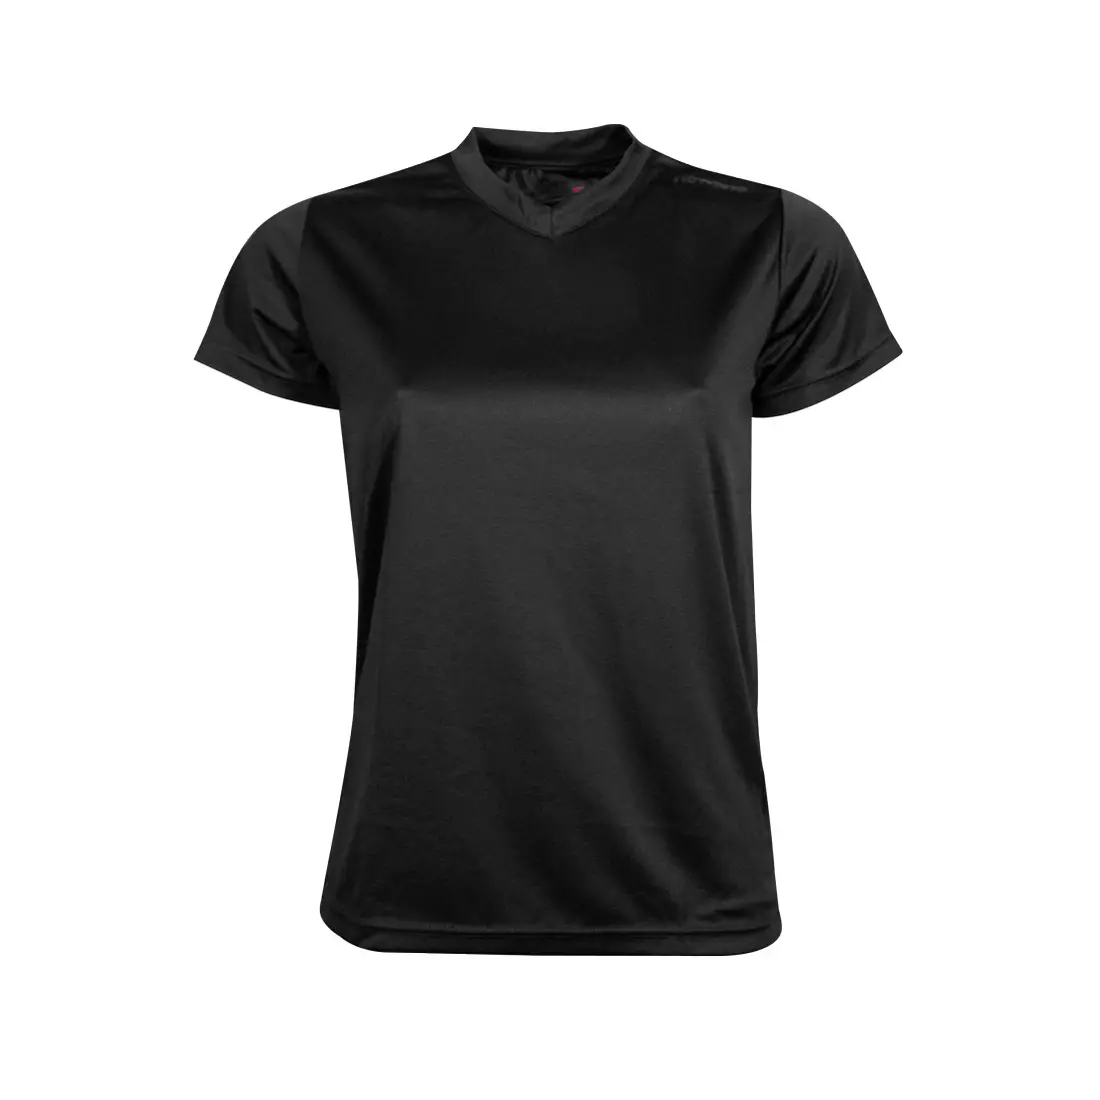 NEWLINE BASE COOL T-SHIRT - women's running T-shirt 13614-060